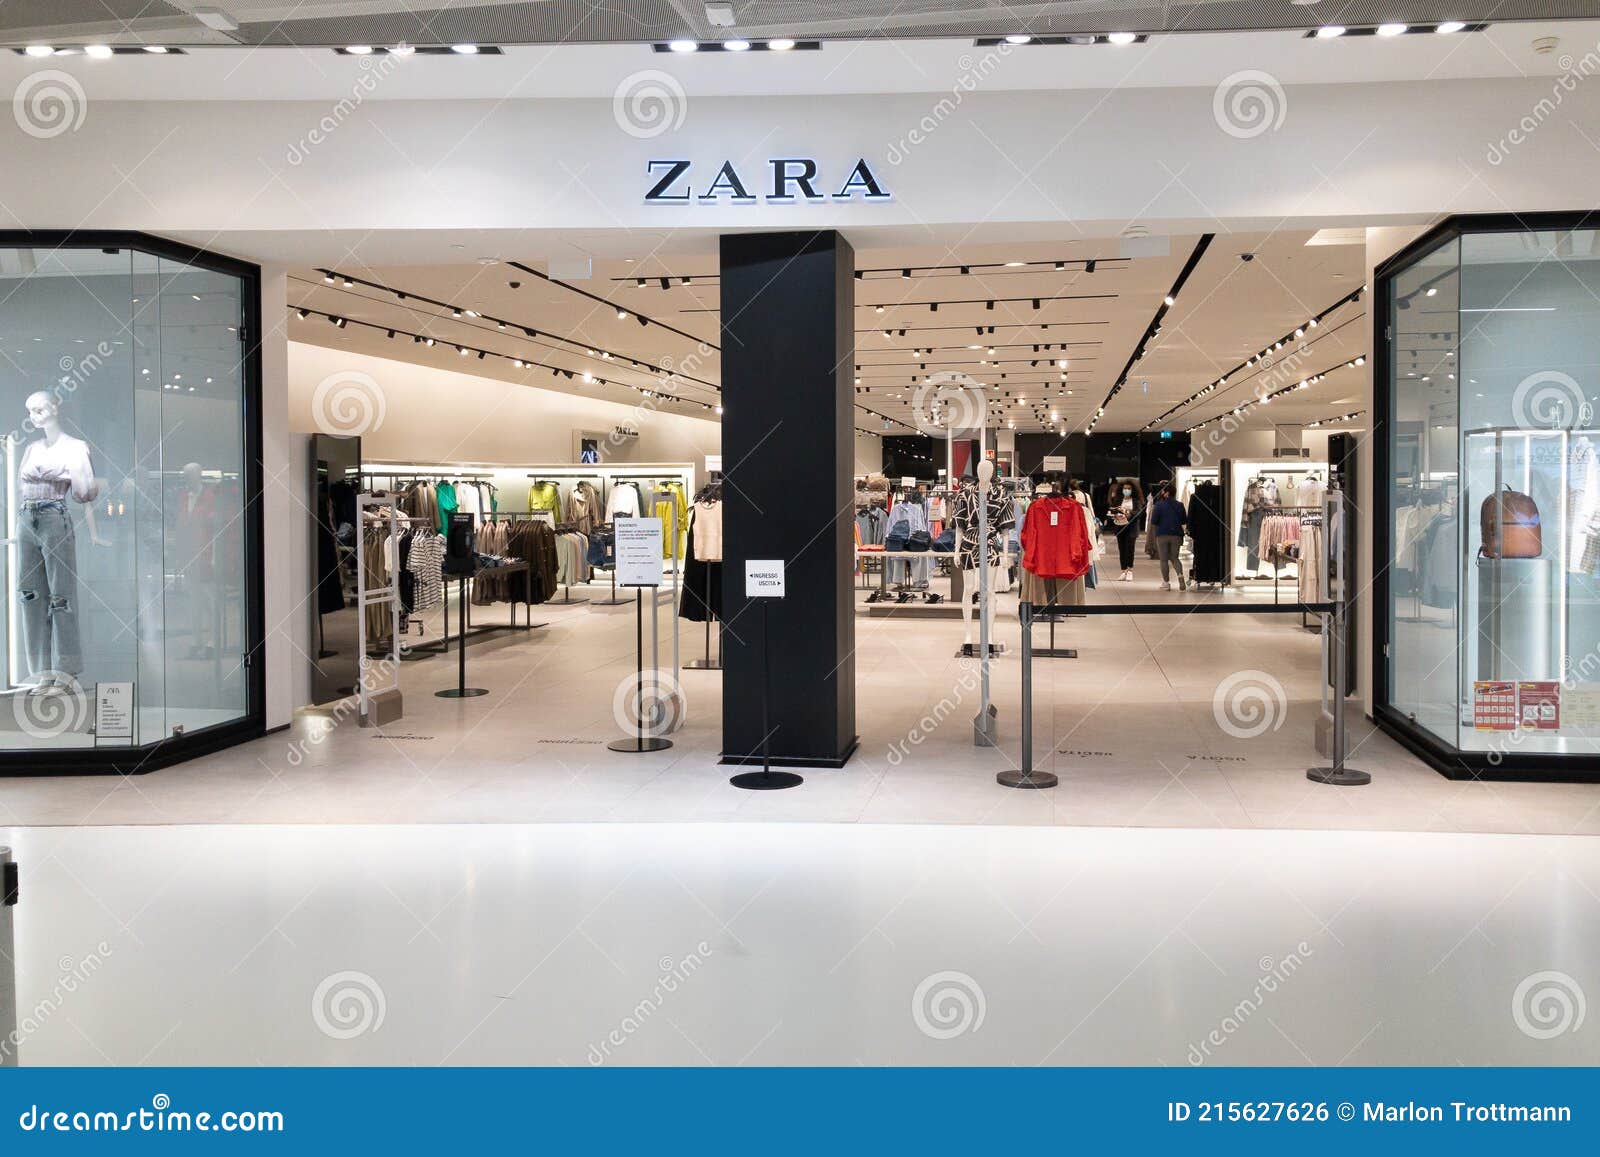 Entrada Da Loja Zara Em Lugano Foto Editorial - Imagem de